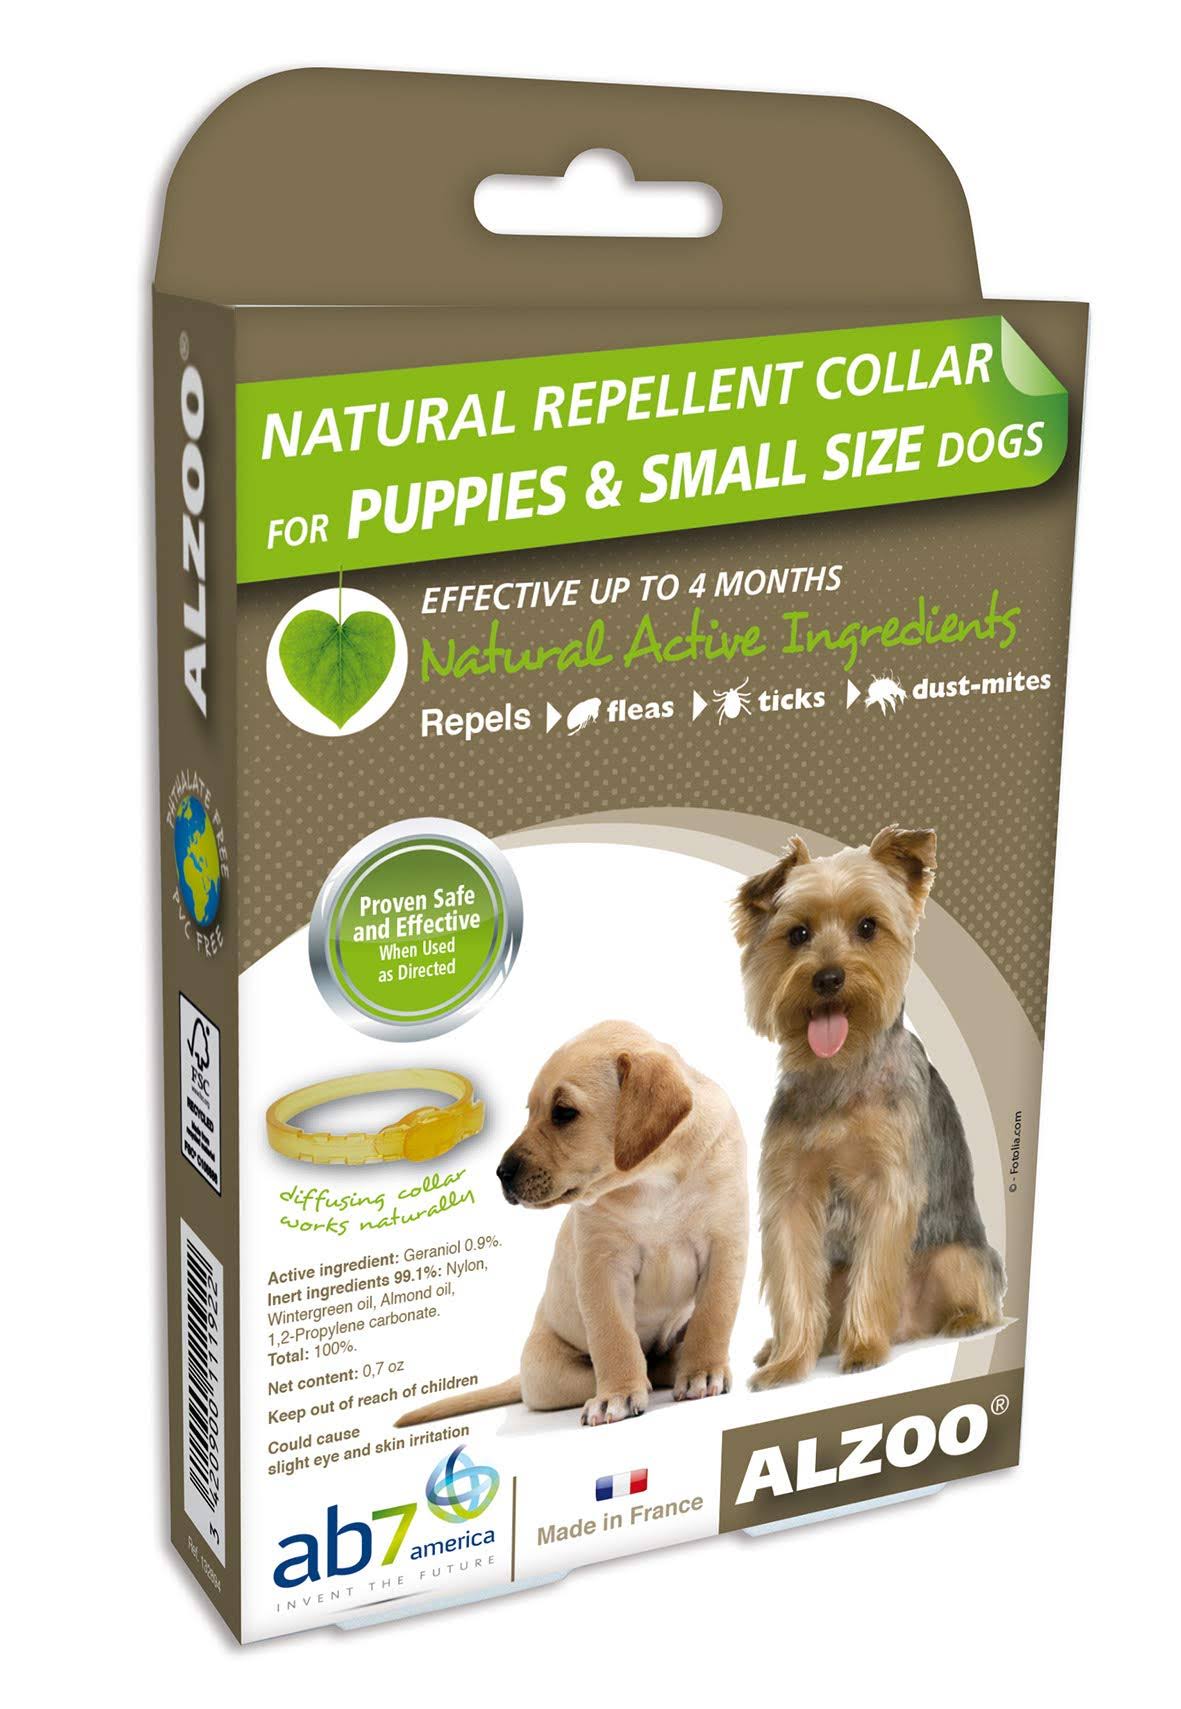 Alzoo Natural Repellent Flea & Tick Dog Collar